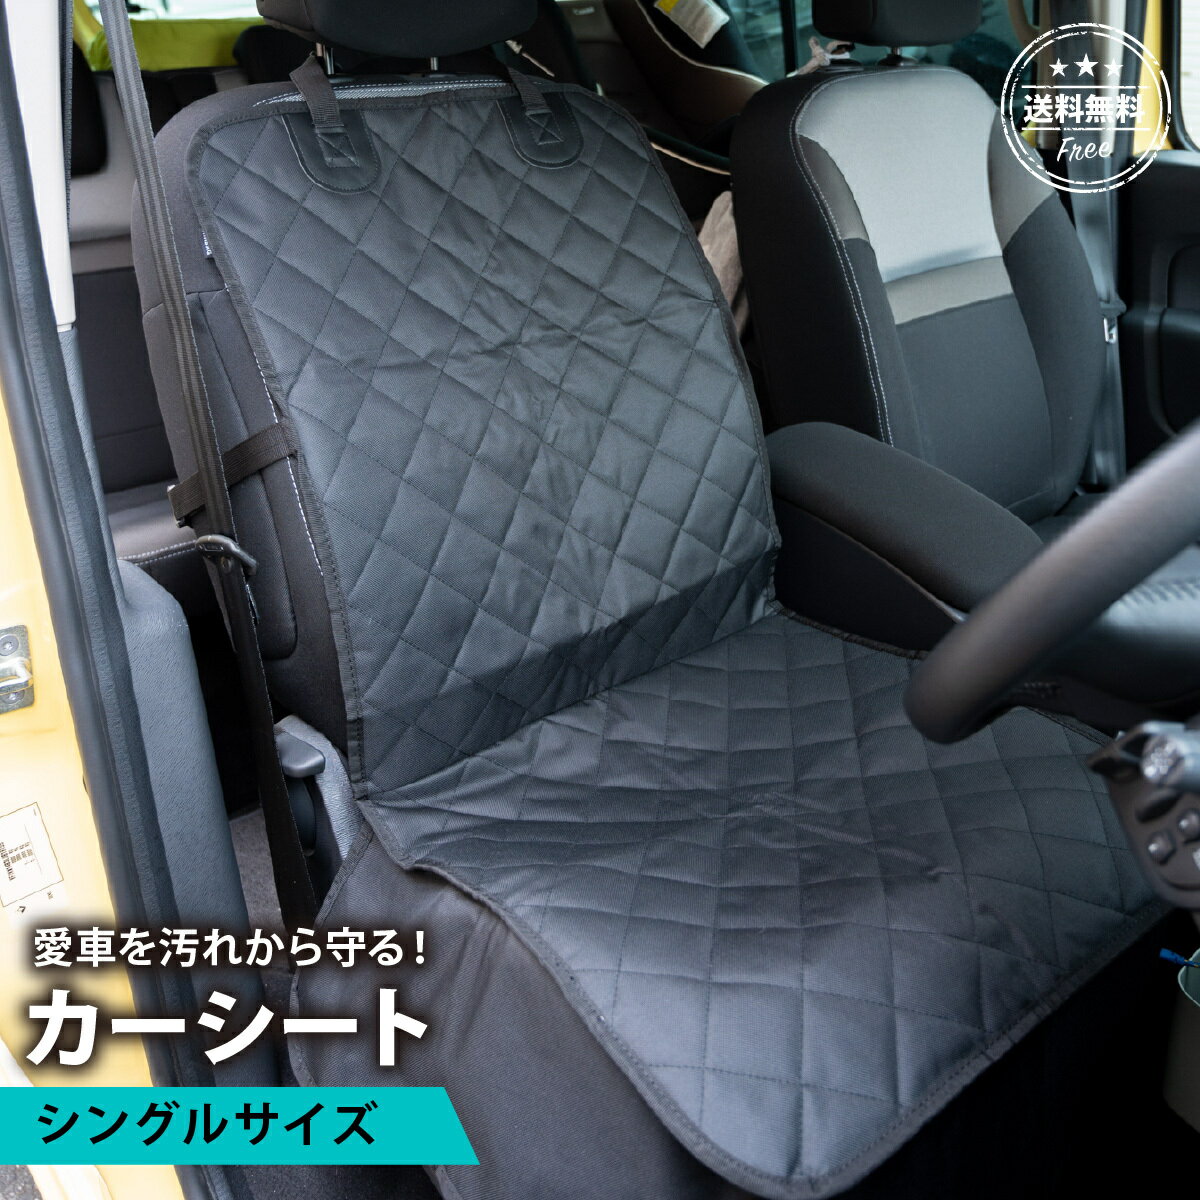 【送料無料】車 シートカバー カーシートカバー 子ども 汎用